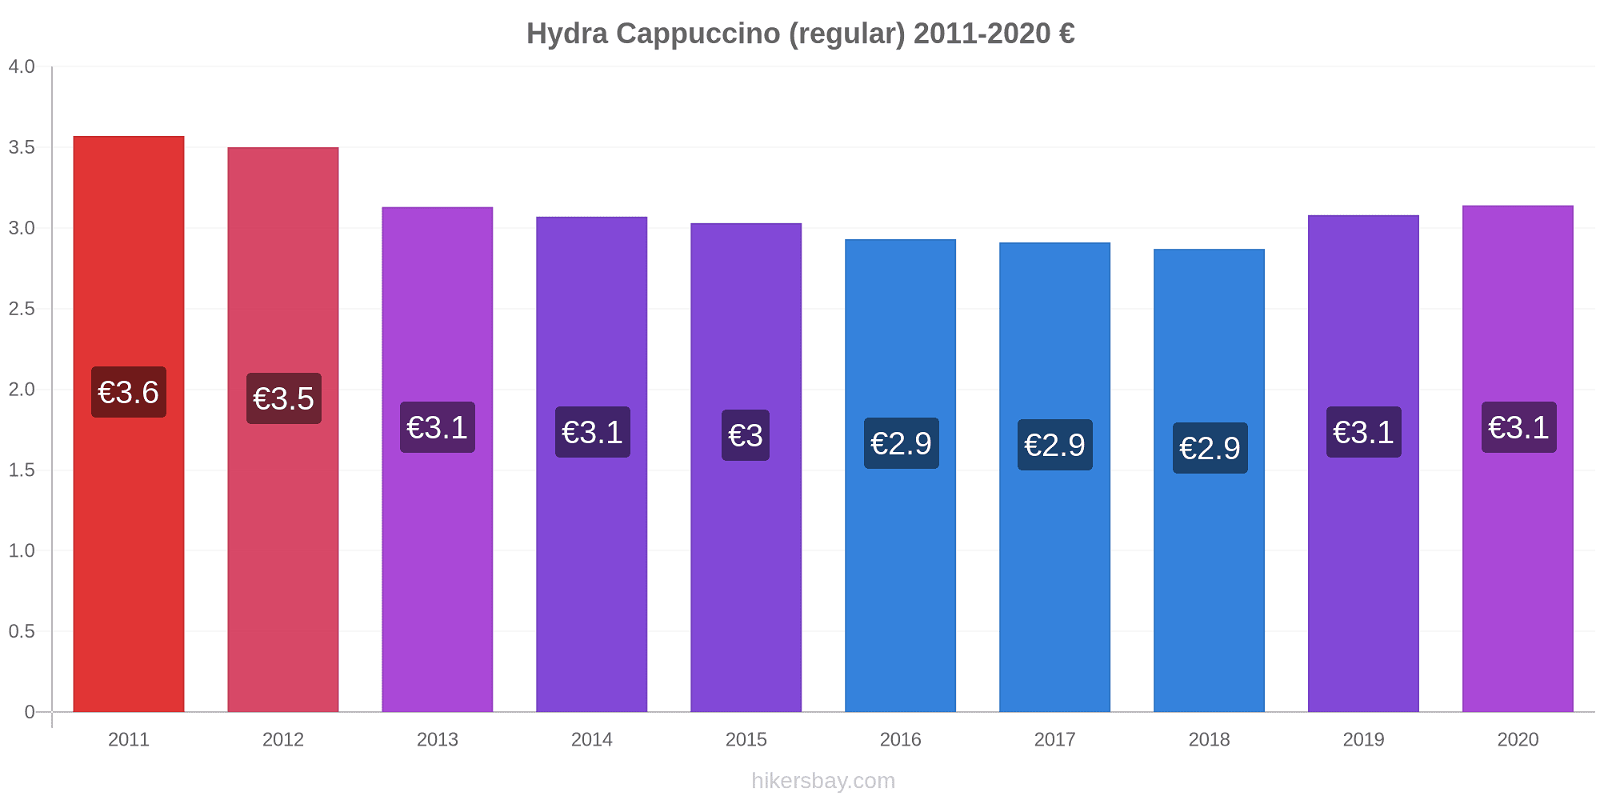 Hydra price changes Cappuccino (regular) hikersbay.com